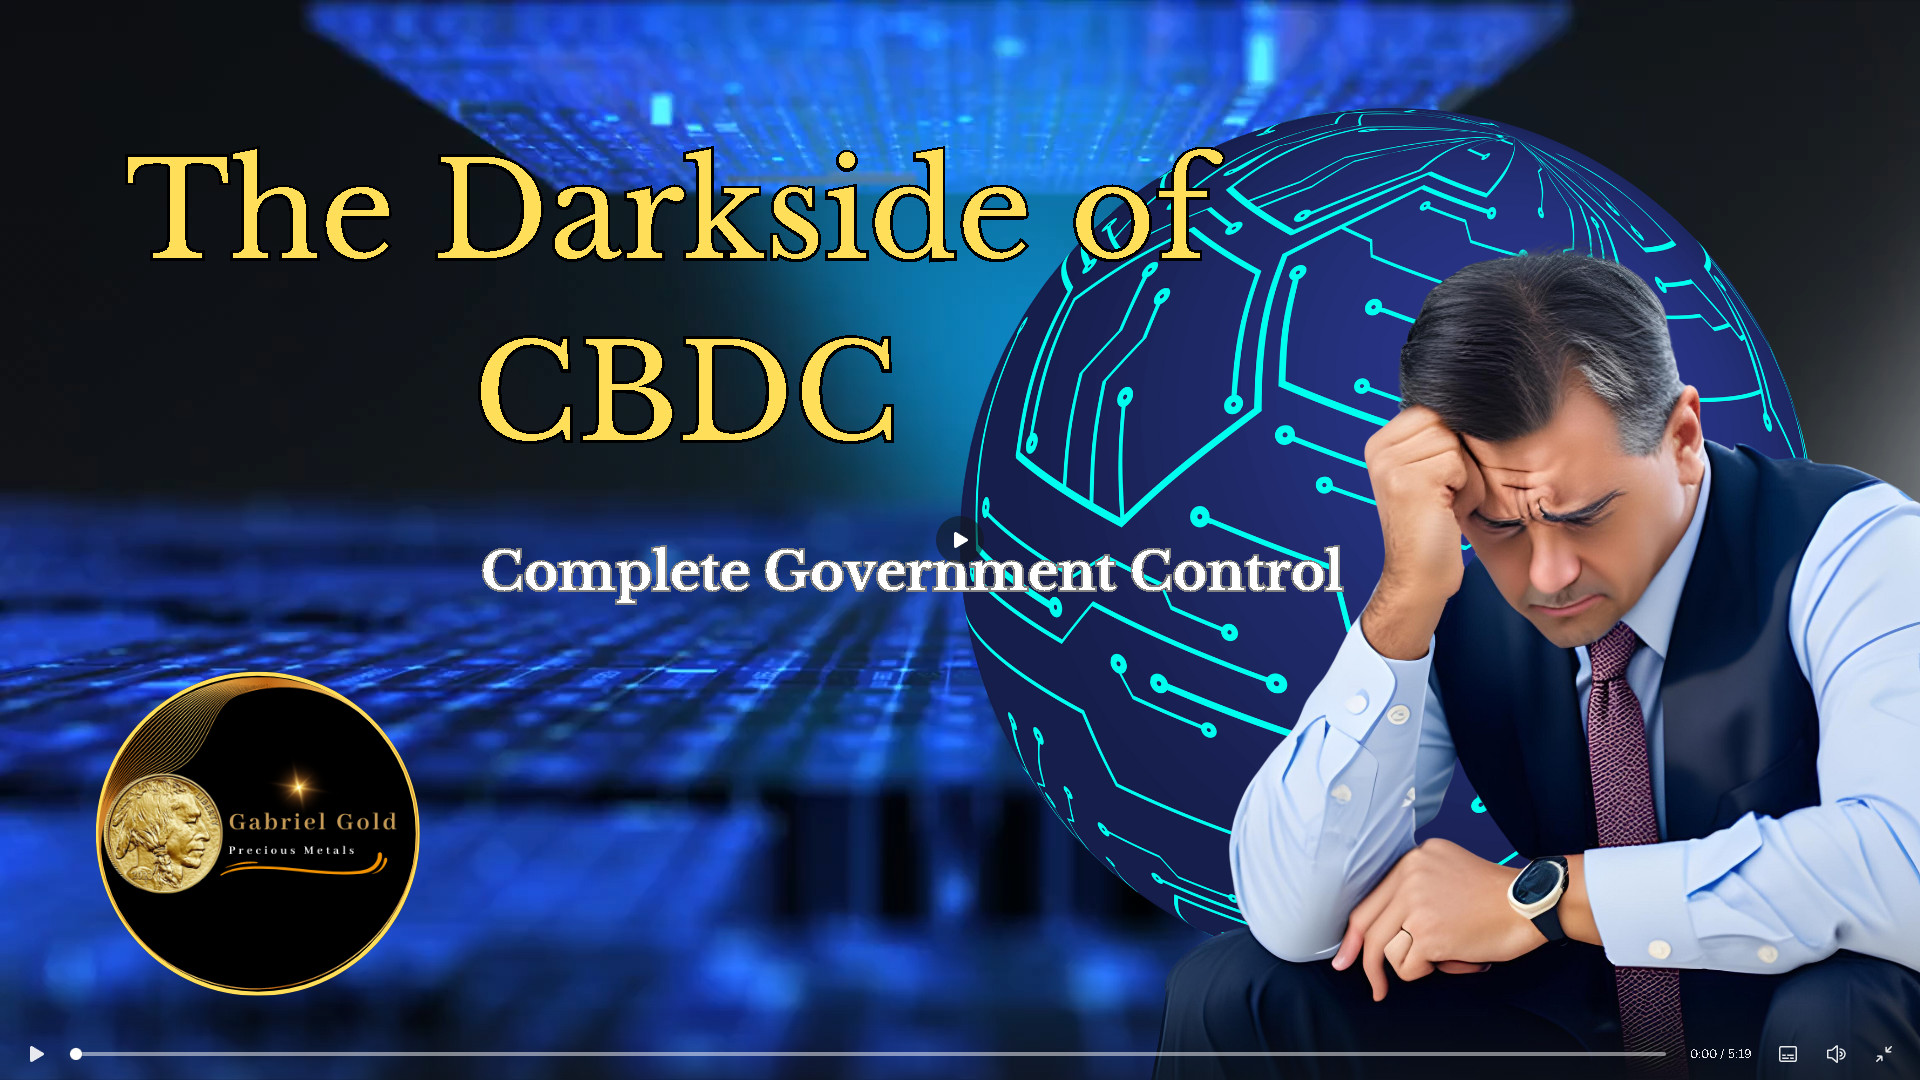 The Darkside of CBDC